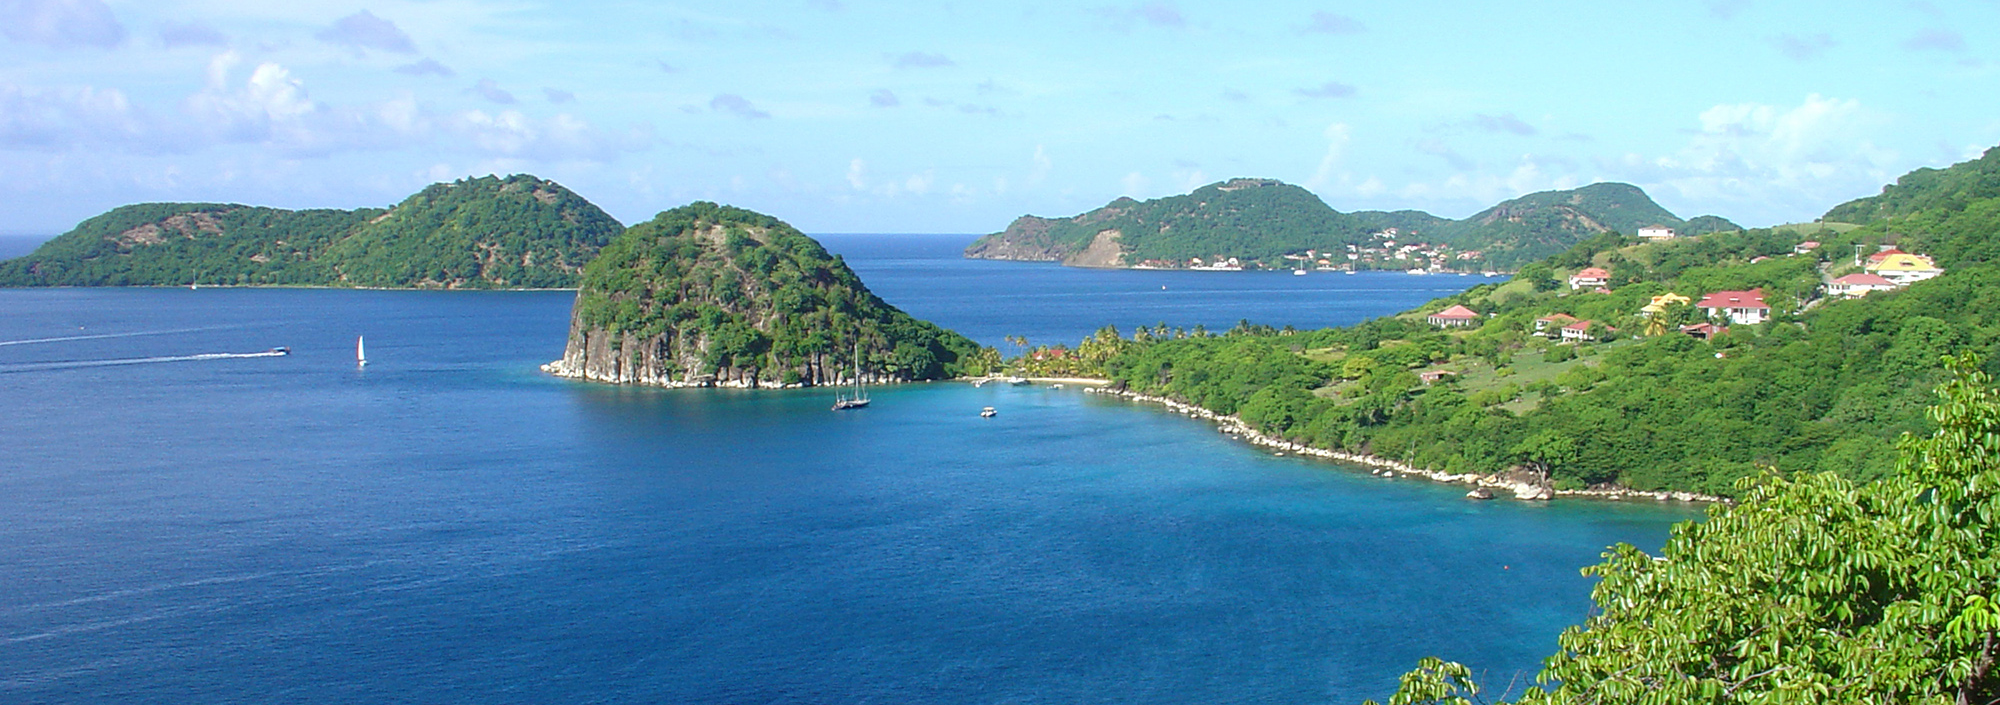 Die Iles des Saintes vor Guadeloupe